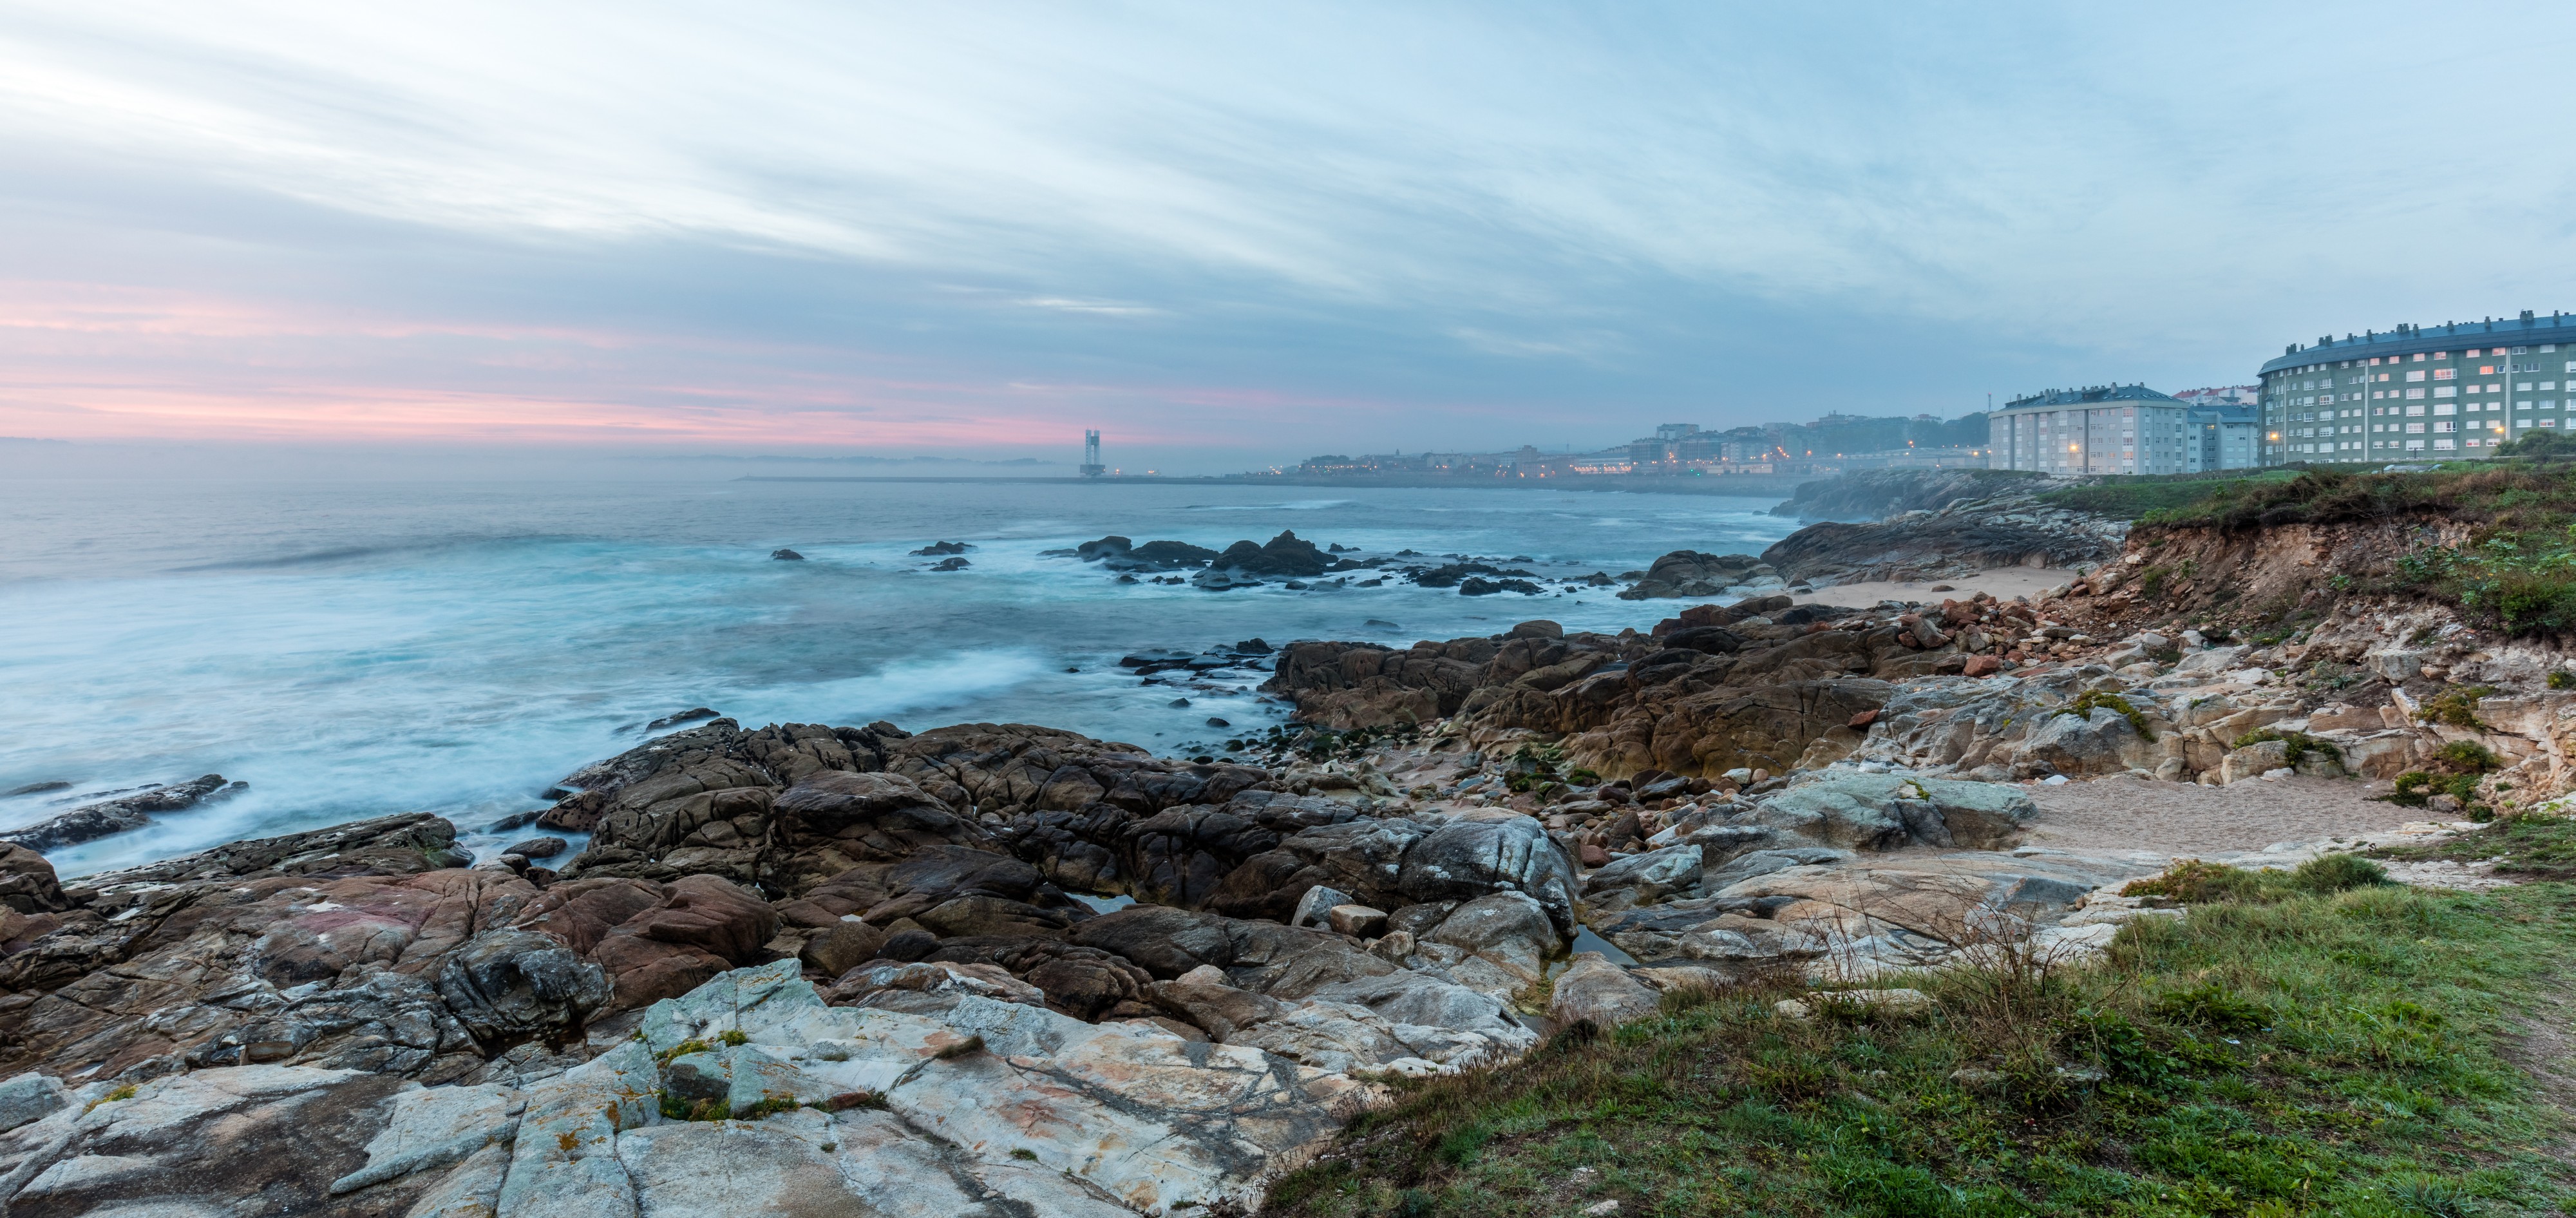 Costa de La Coruña, España, 2015-09-25, DD 14-16 HDR